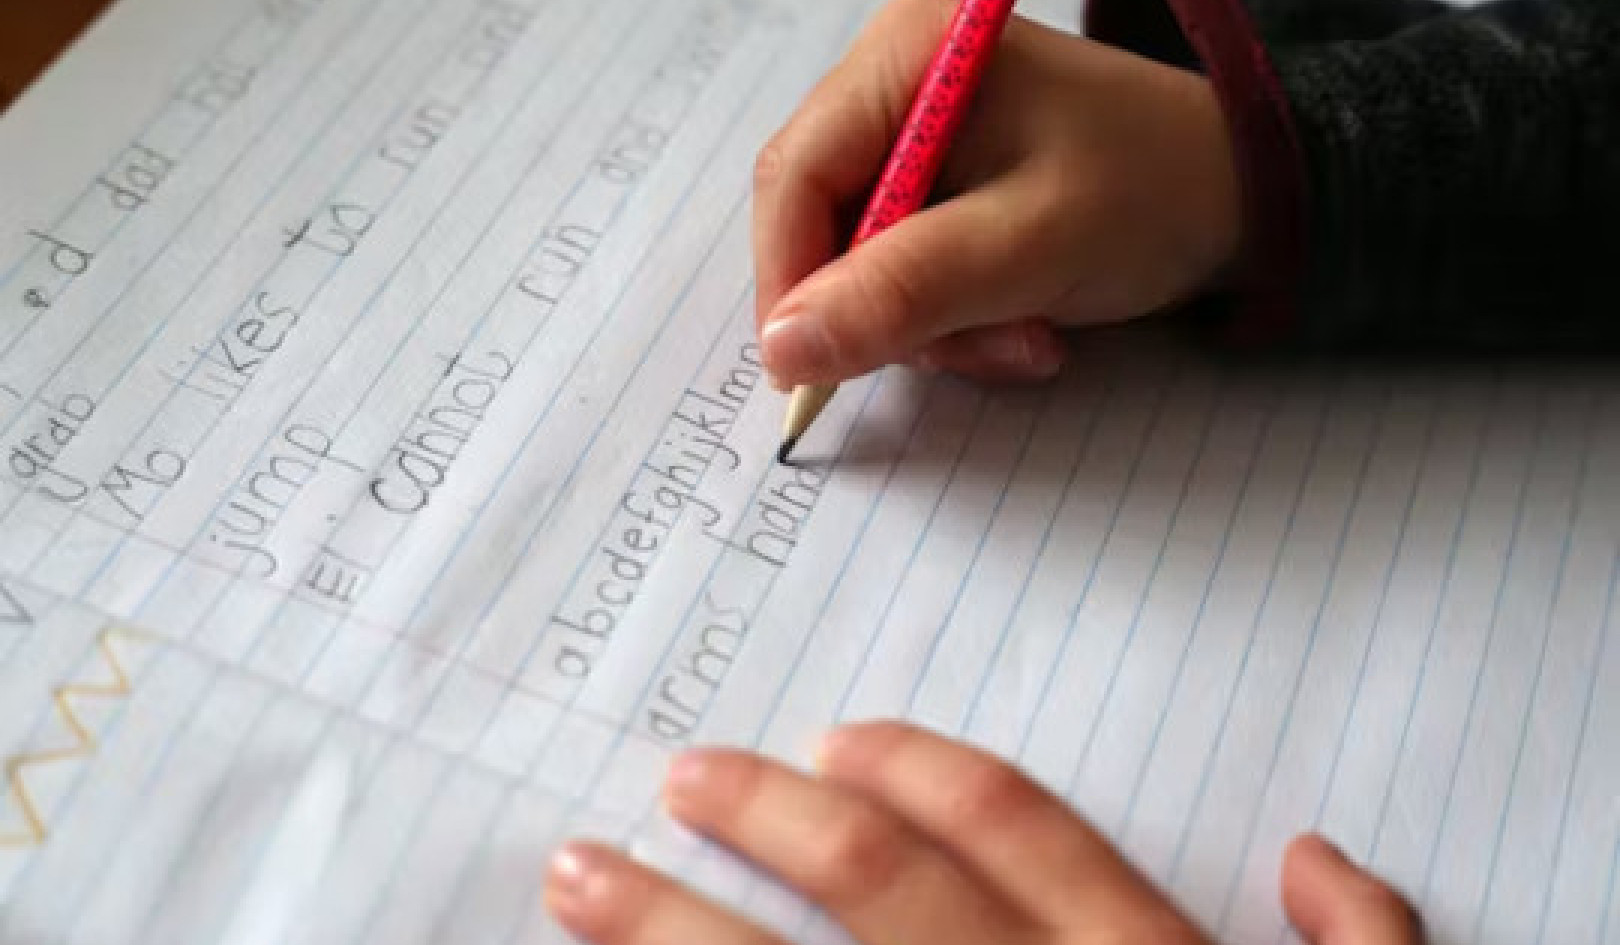 أهمية الكتابة اليدوية: 5 أسباب لا يزال الأطفال بحاجة لتعلم الكتابة اليدوية